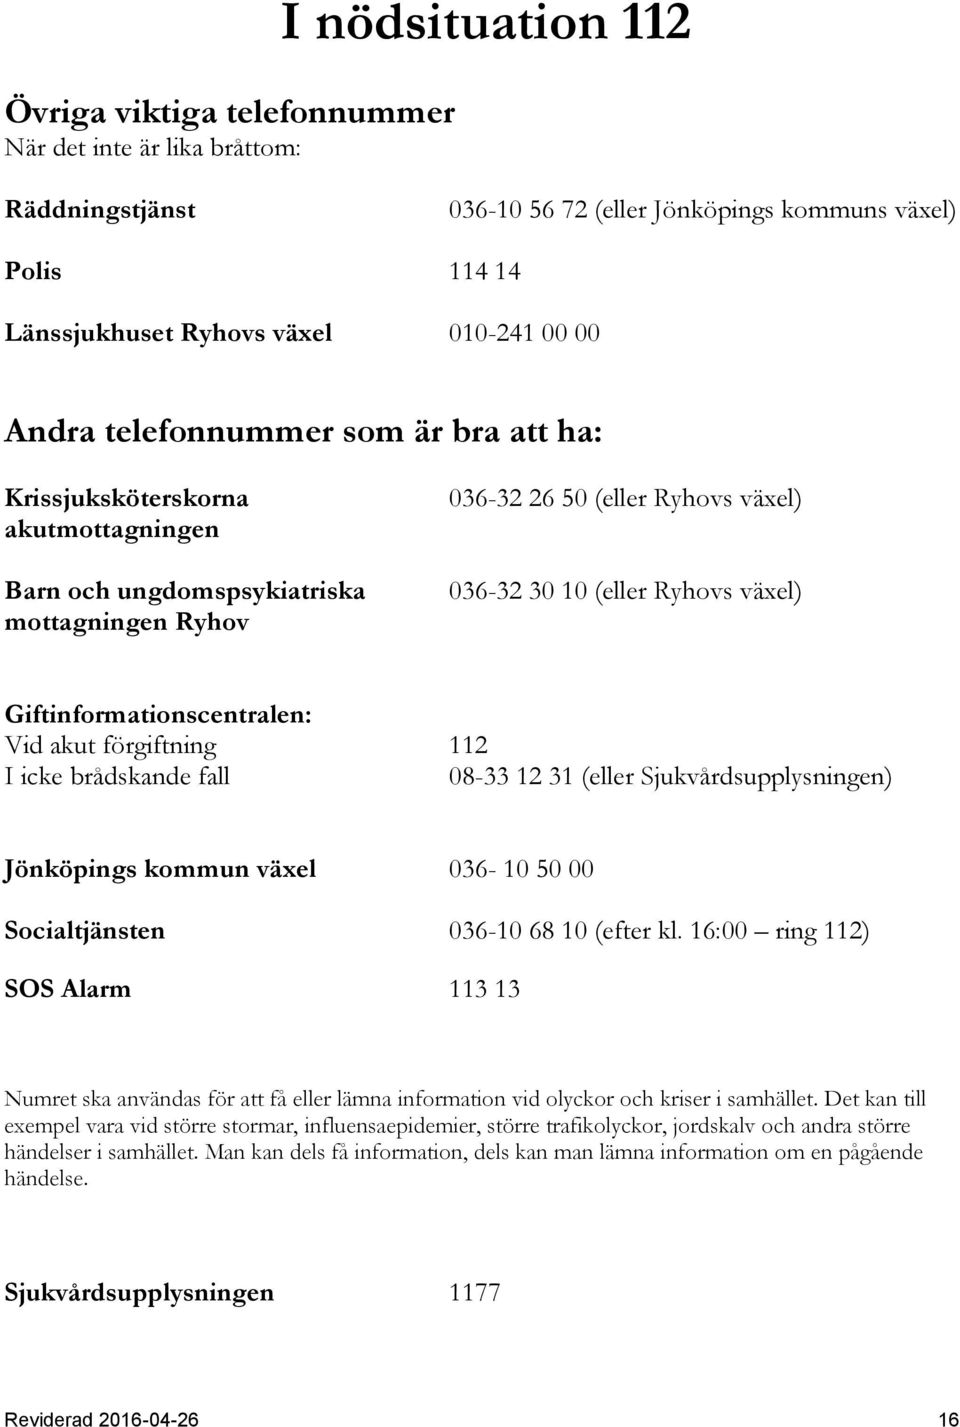 Giftinformationscentralen: Vid akut förgiftning 112 I icke brådskande fall 08-33 12 31 (eller Sjukvårdsupplysningen) Jönköpings kommun växel 036-10 50 00 Socialtjänsten 036-10 68 10 (efter kl.